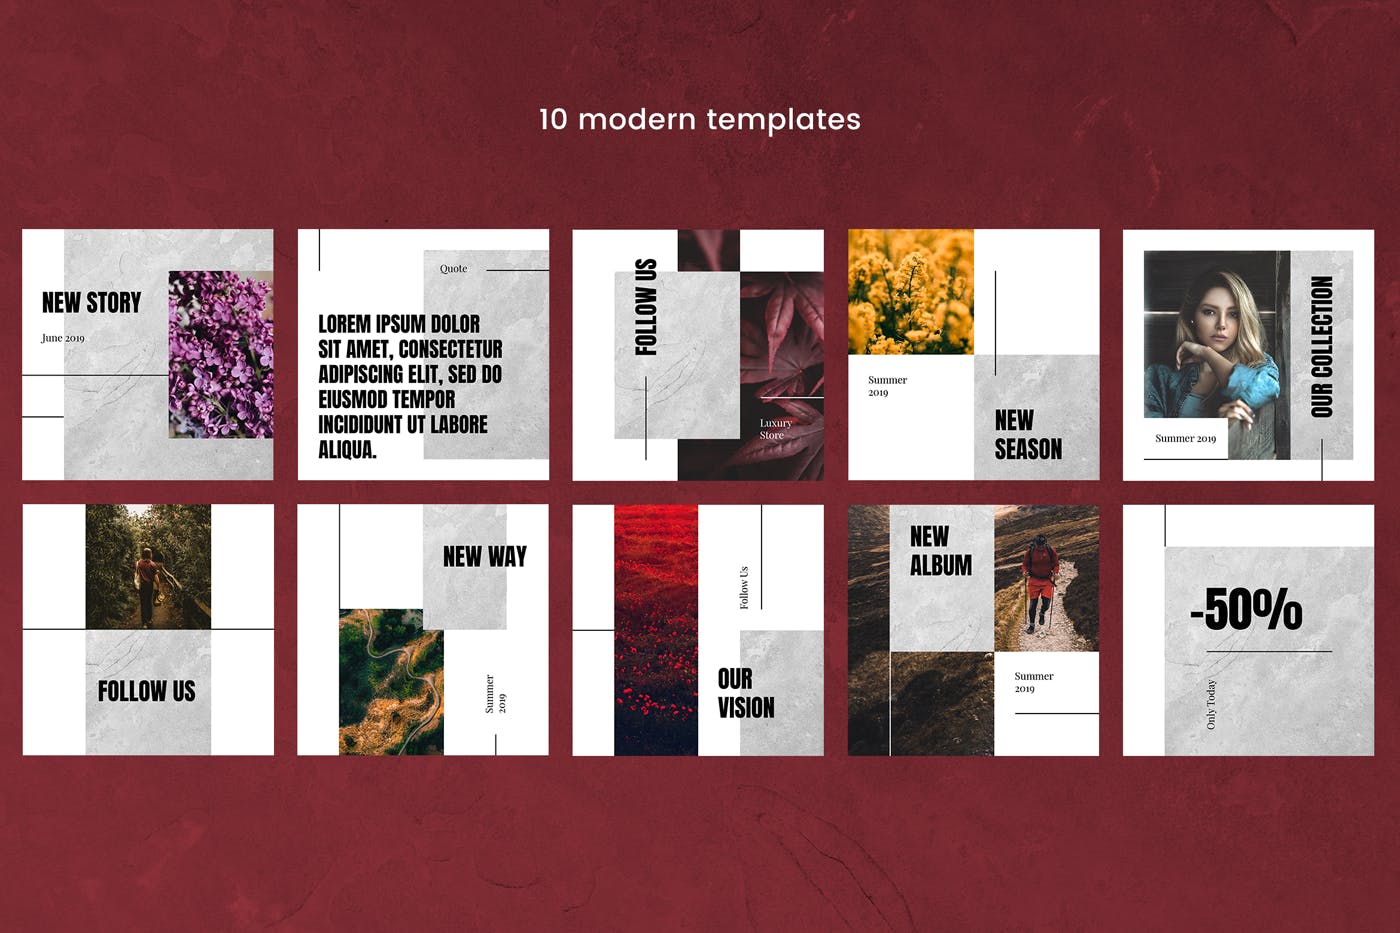 现代风格社交媒体品牌推广设计模板素材库精选v18 Modern Social Media Kit (Vol. 18)插图(2)